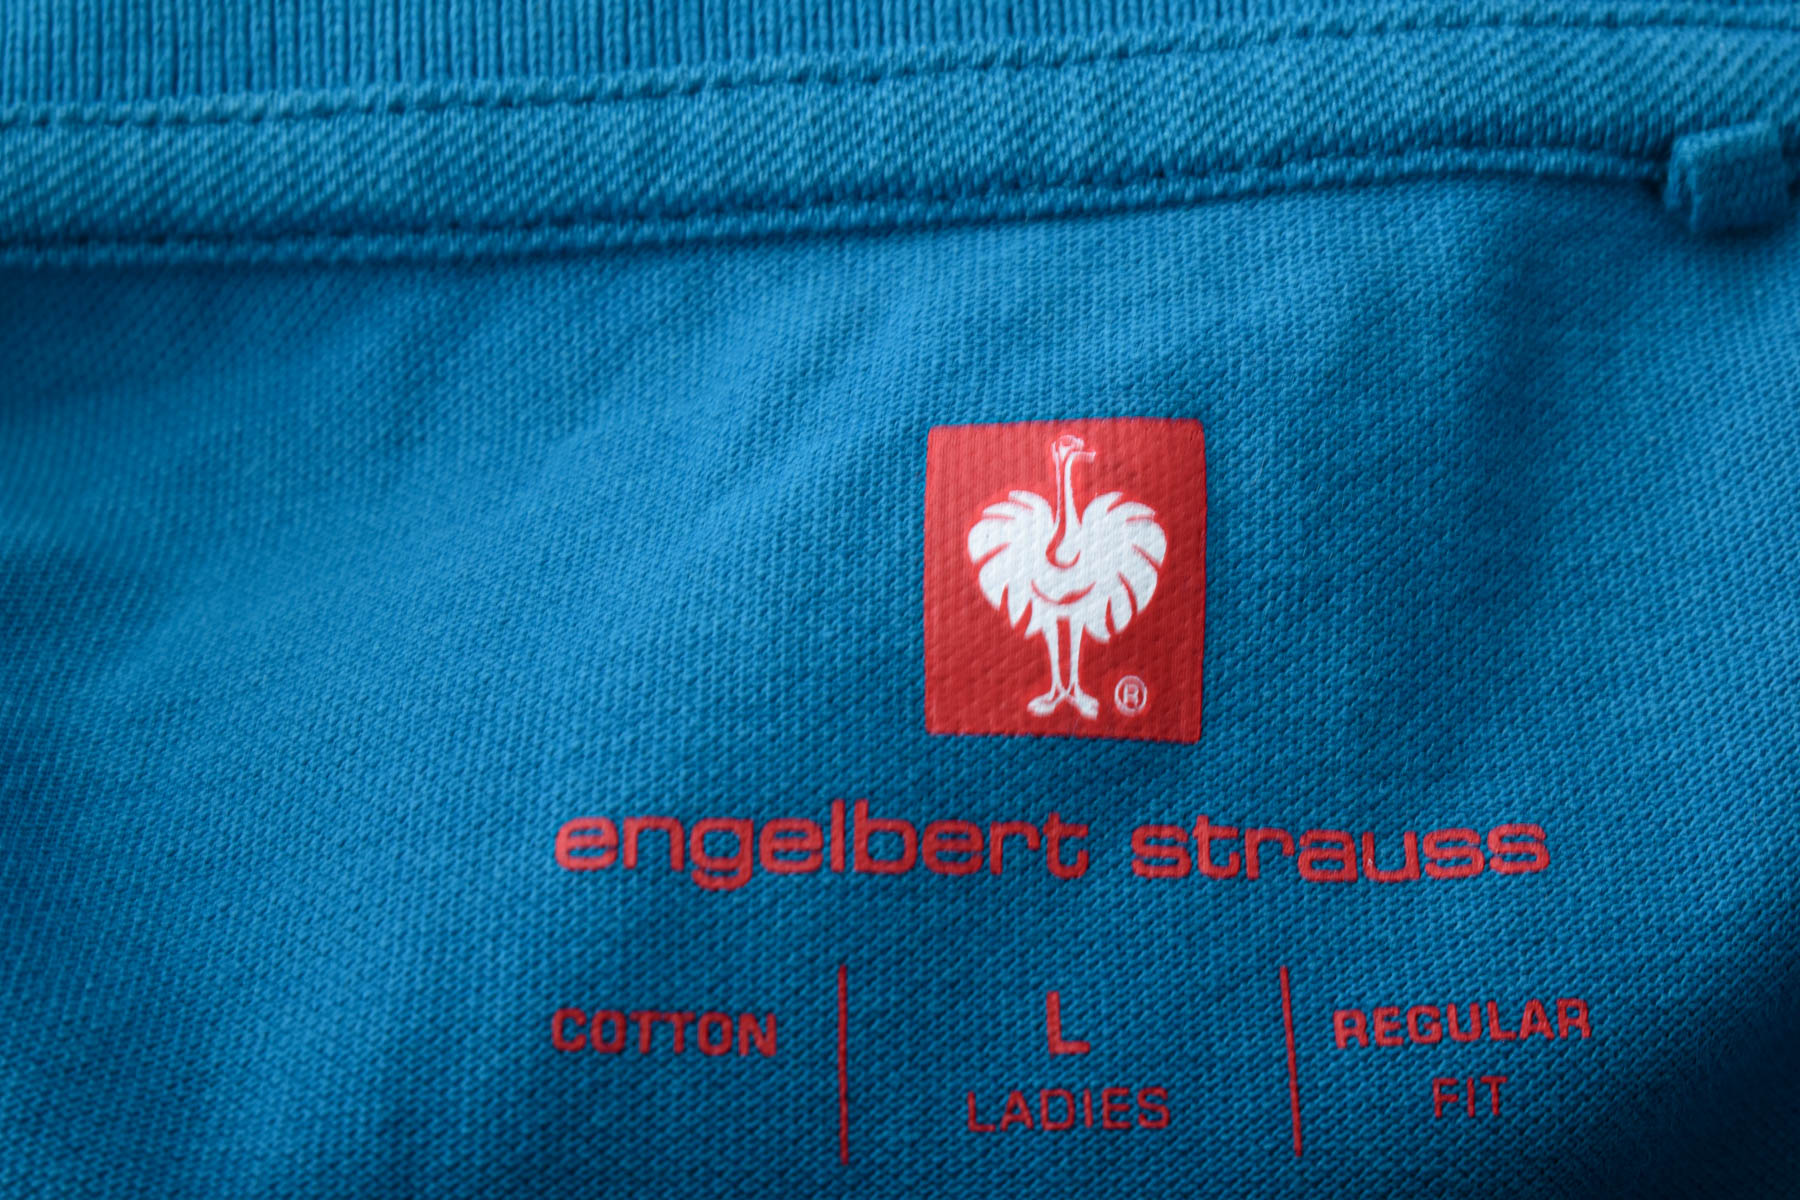 Women's t-shirt - Engelbert Strauss - 2